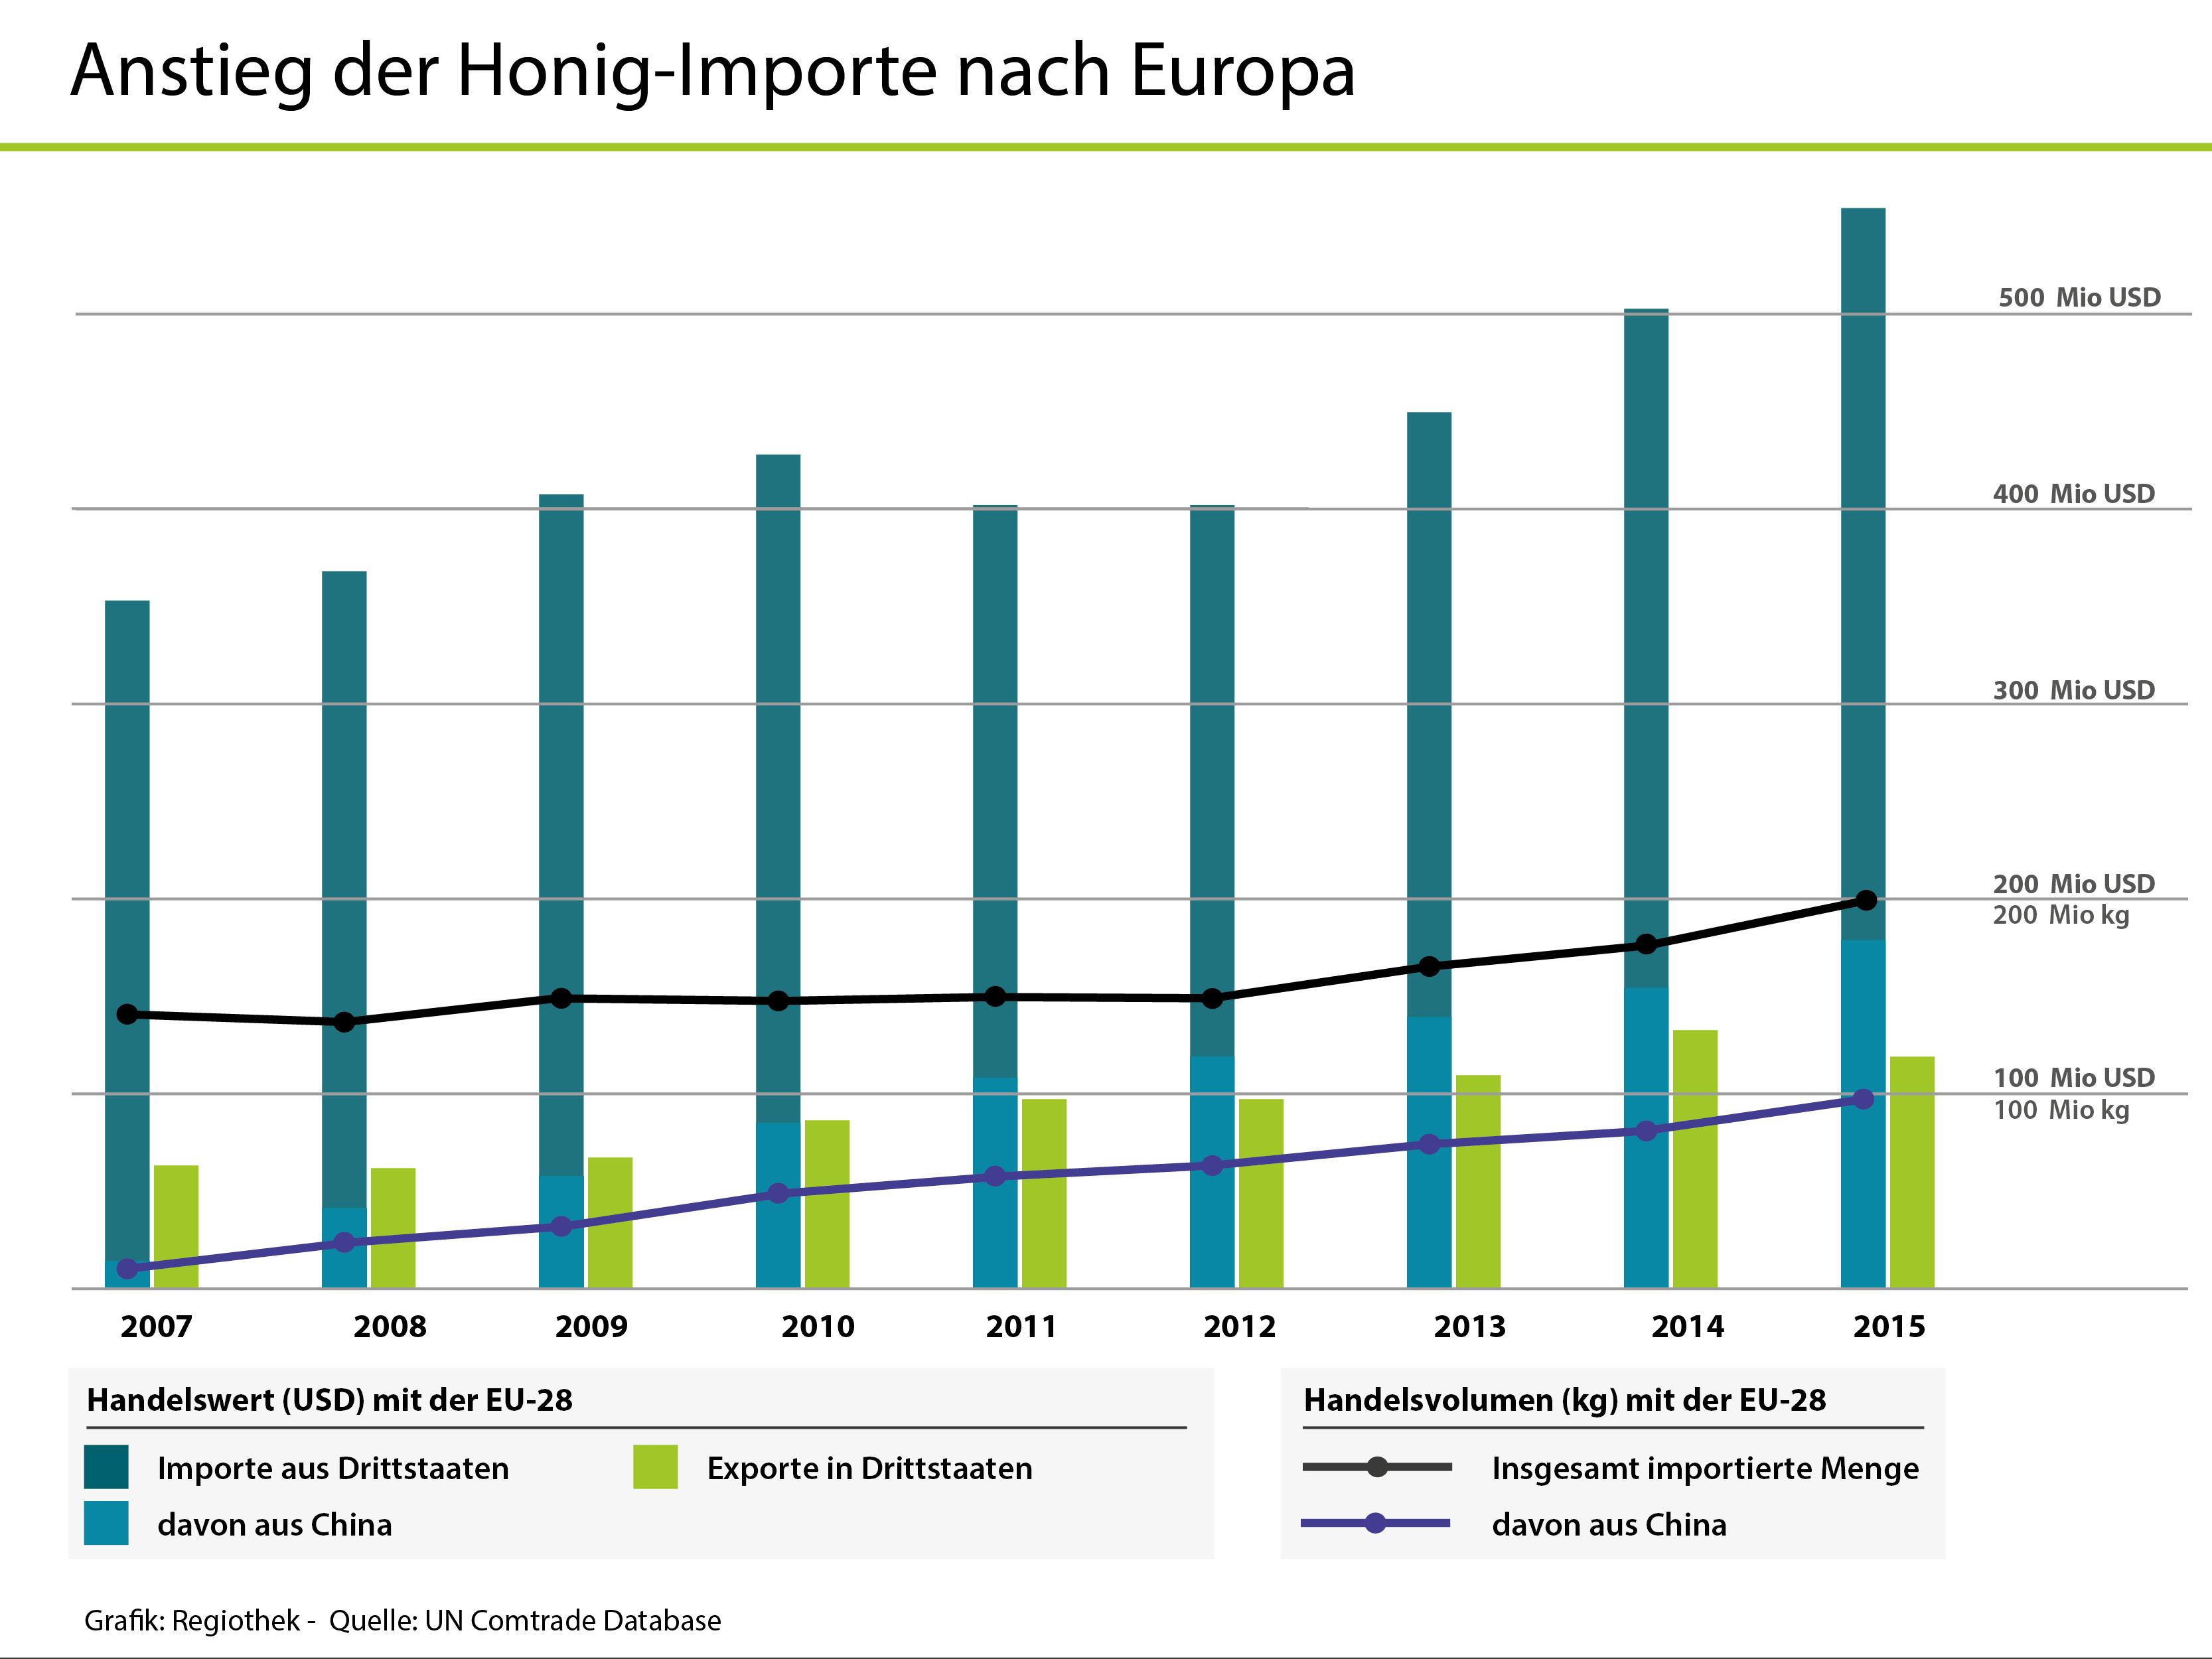 Chinesischer Honig macht einen immer größeren Anteil des Importvolumens aus.